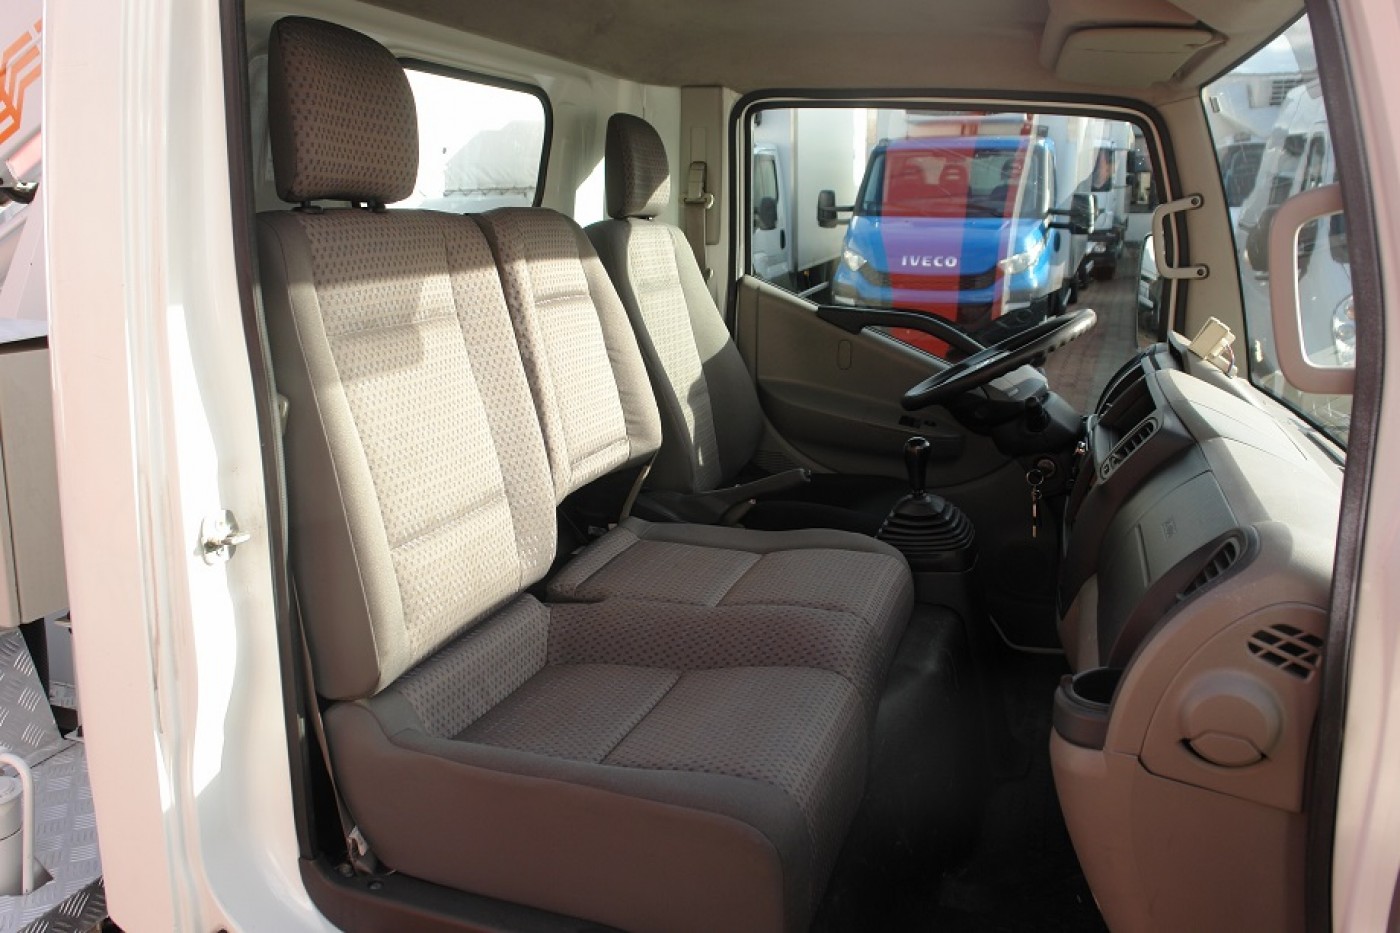 Nissan Nissan Cabstar 35.11 nacela prb Comilev 100TVL 10m 120kg